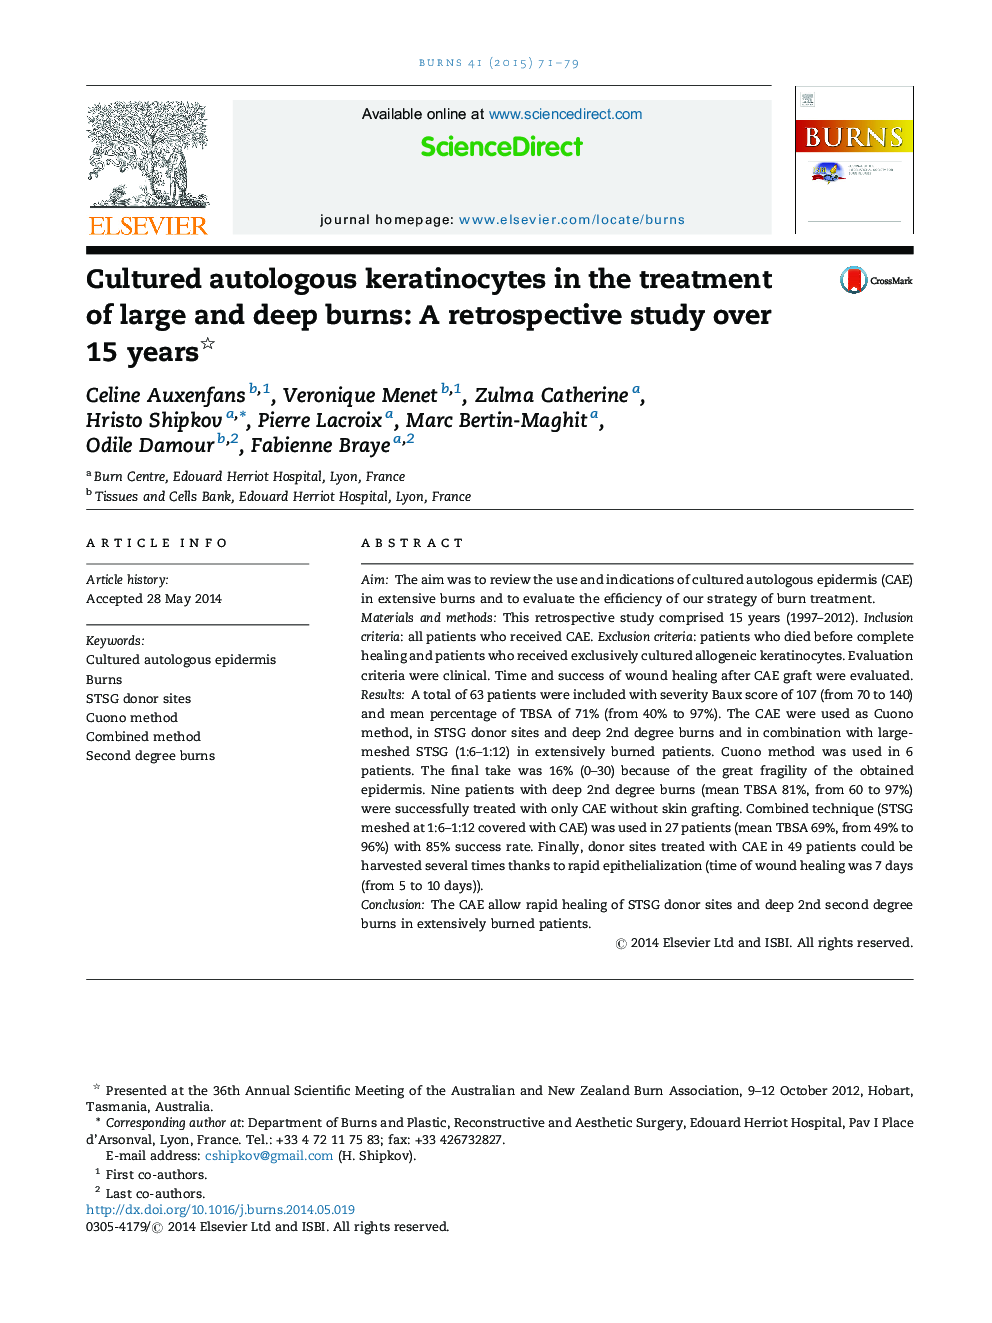 کراتینوسیت اتولوگ کشت در درمان سوختگی‌های وسیع و عمیق: یک مطالعه گذشته نگر بیش از 15 سال 